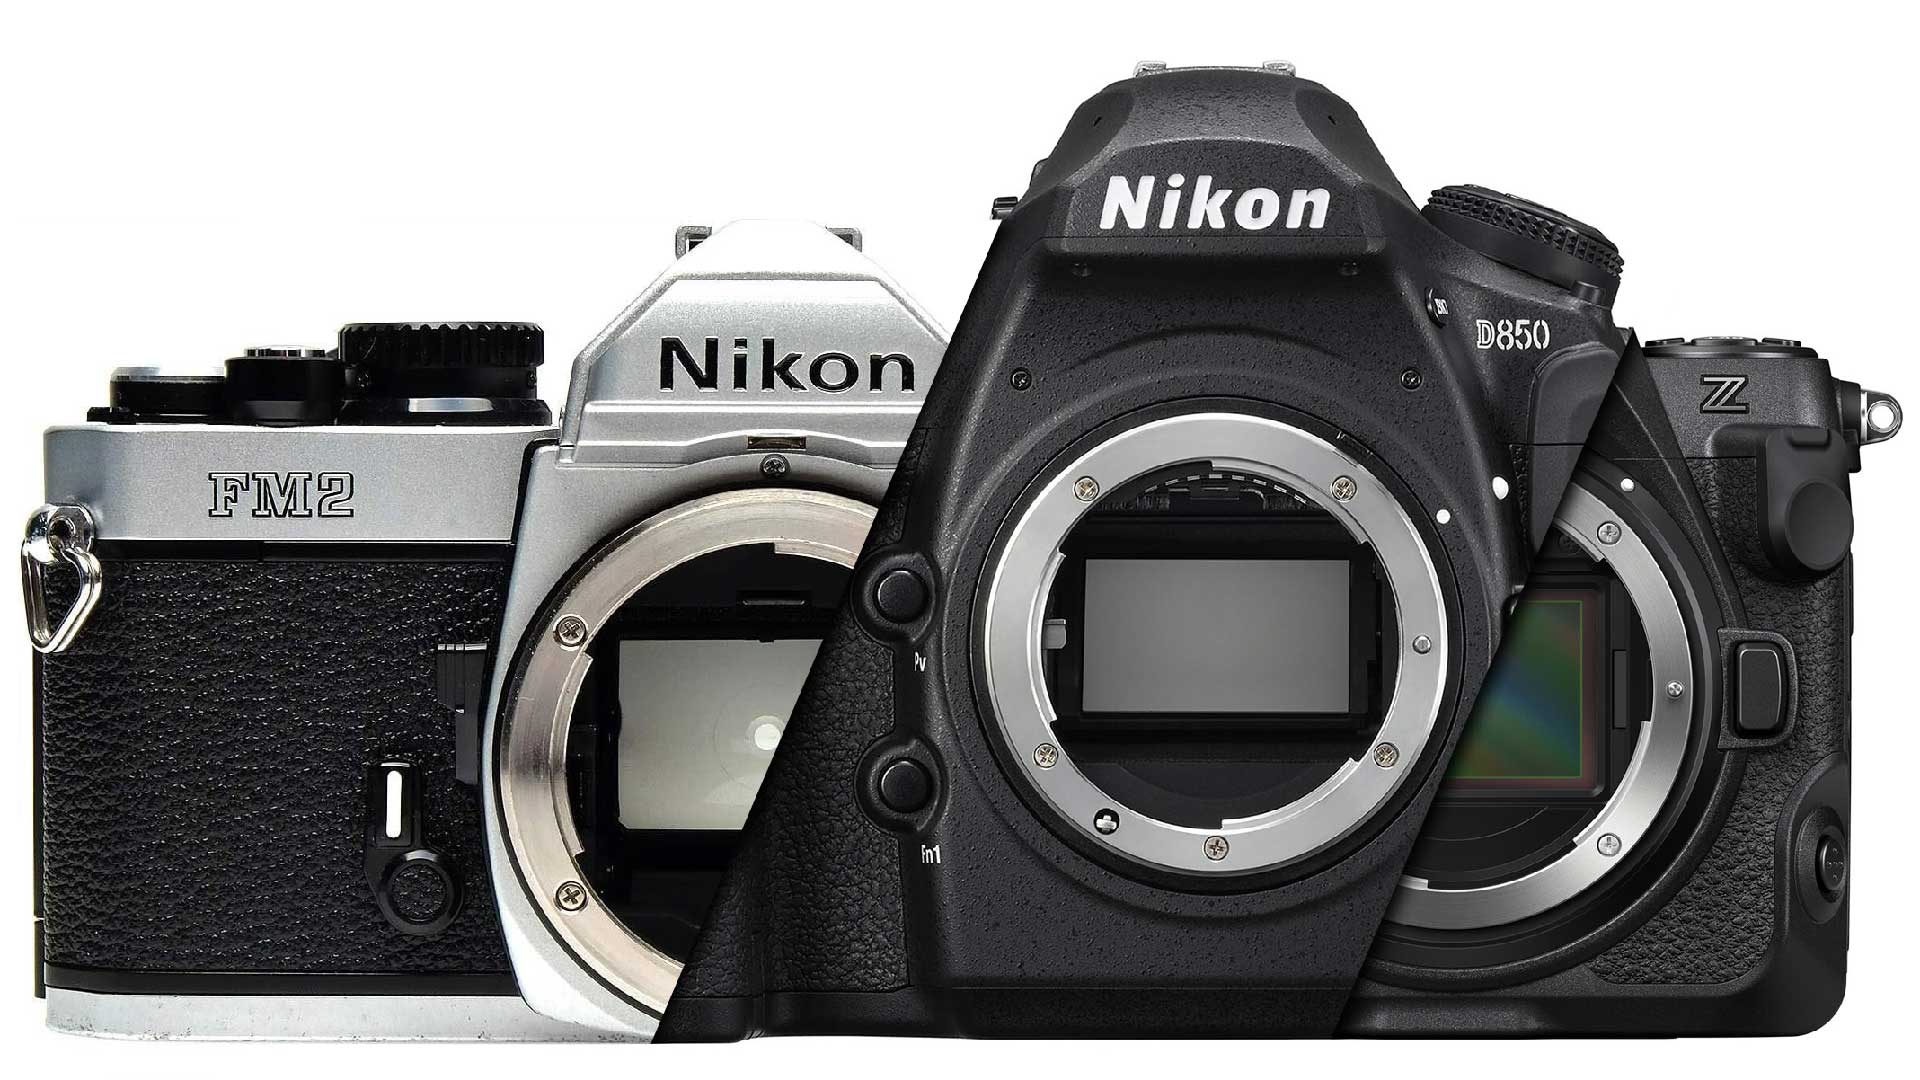 Nikon Company and Camera History